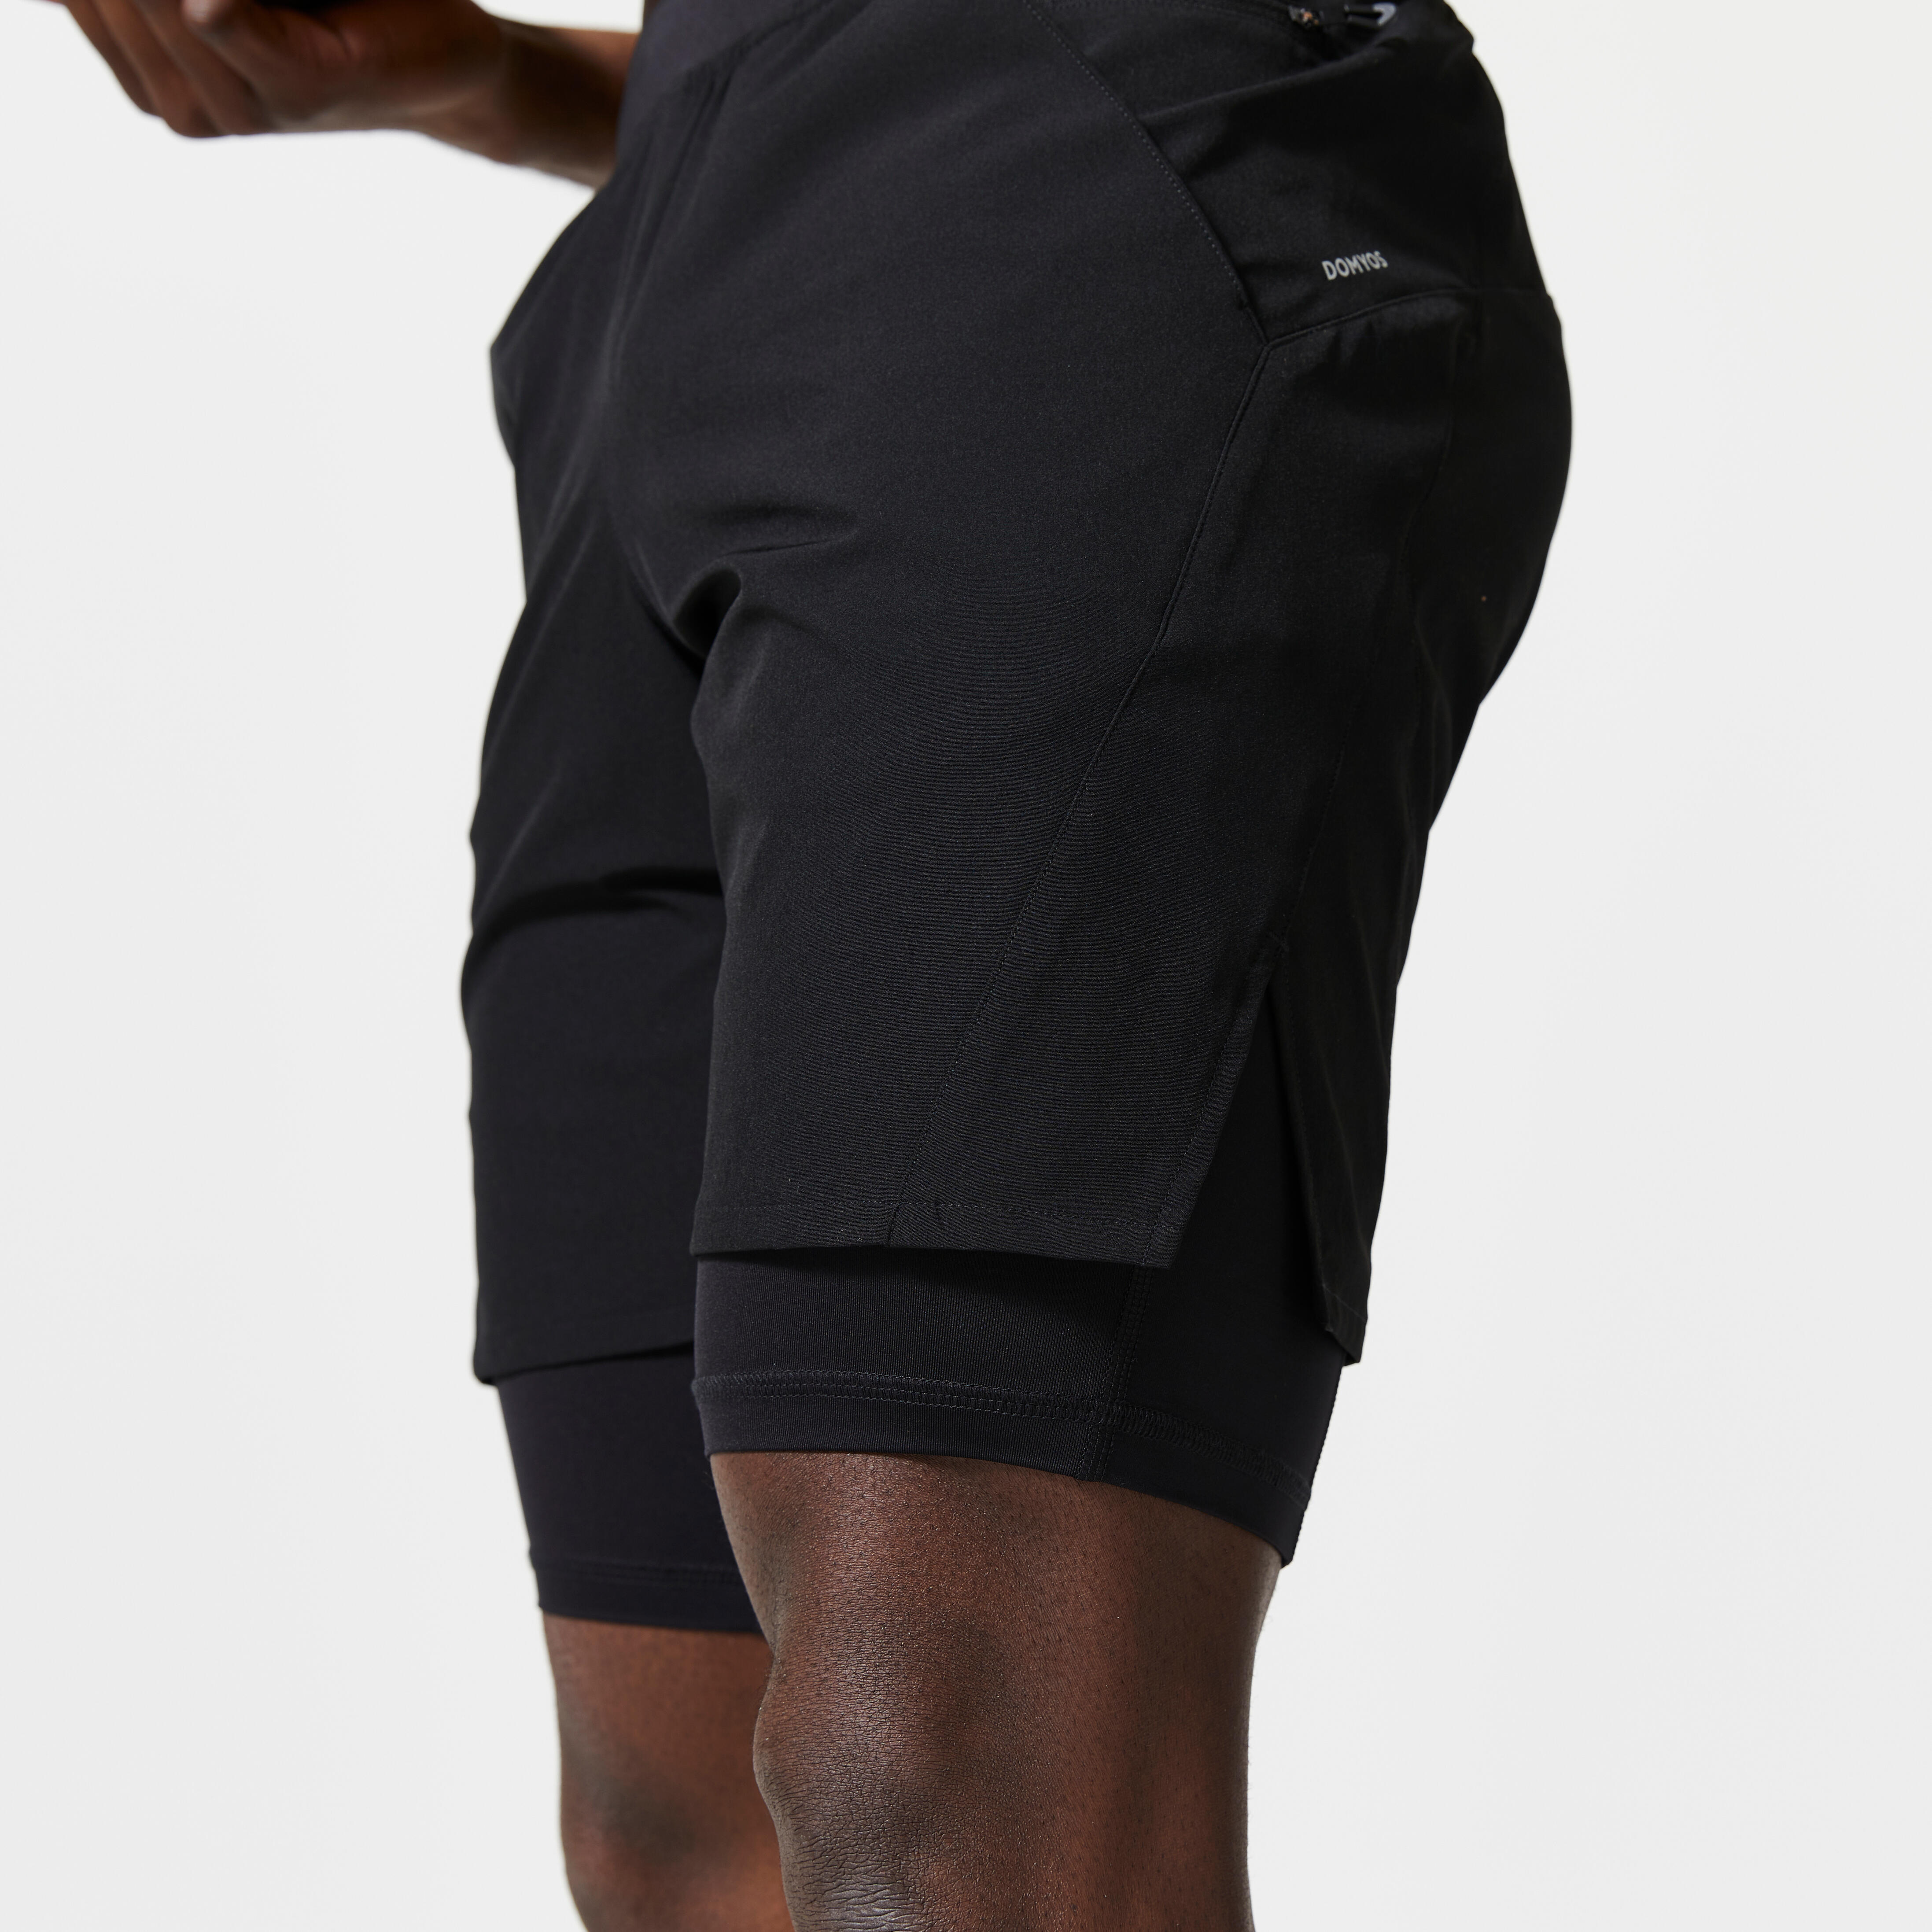 Men's 2-in-1 Fitness Shorts - 500 - black - Domyos - Decathlon